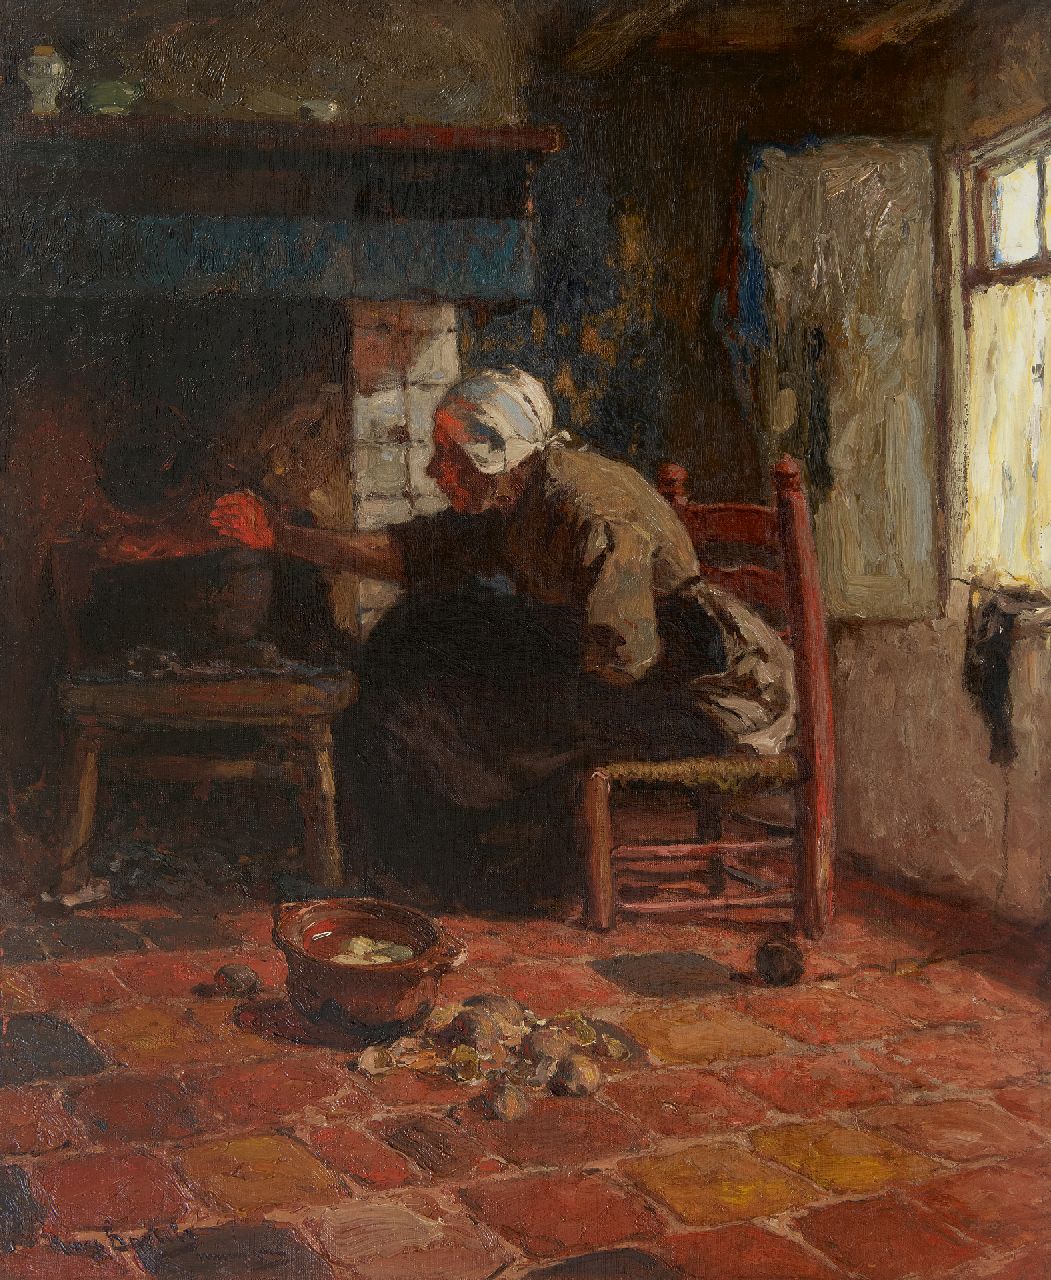 Bartels H. von | Hans von Bartels | Schilderijen te koop aangeboden | Katwijkse vrouw bij het haardvuur, olieverf op doek 67,3 x 55,0 cm, gesigneerd linksonder